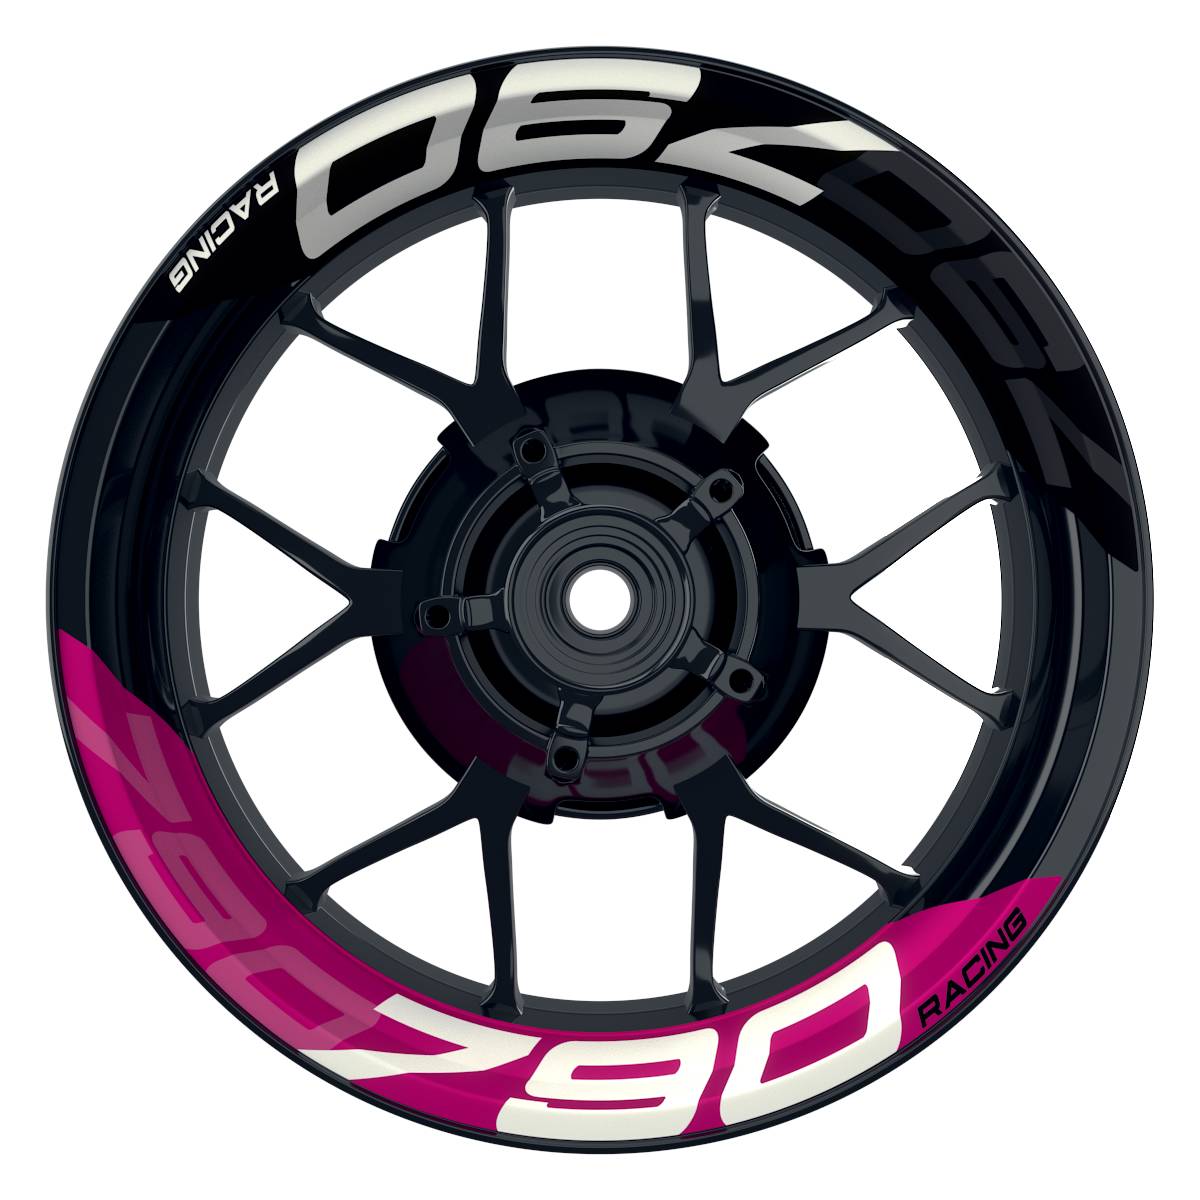 Wheelsticker Felgenaufkleber KTM Racing 790 halb halb V2 schwarz pink Frontansicht